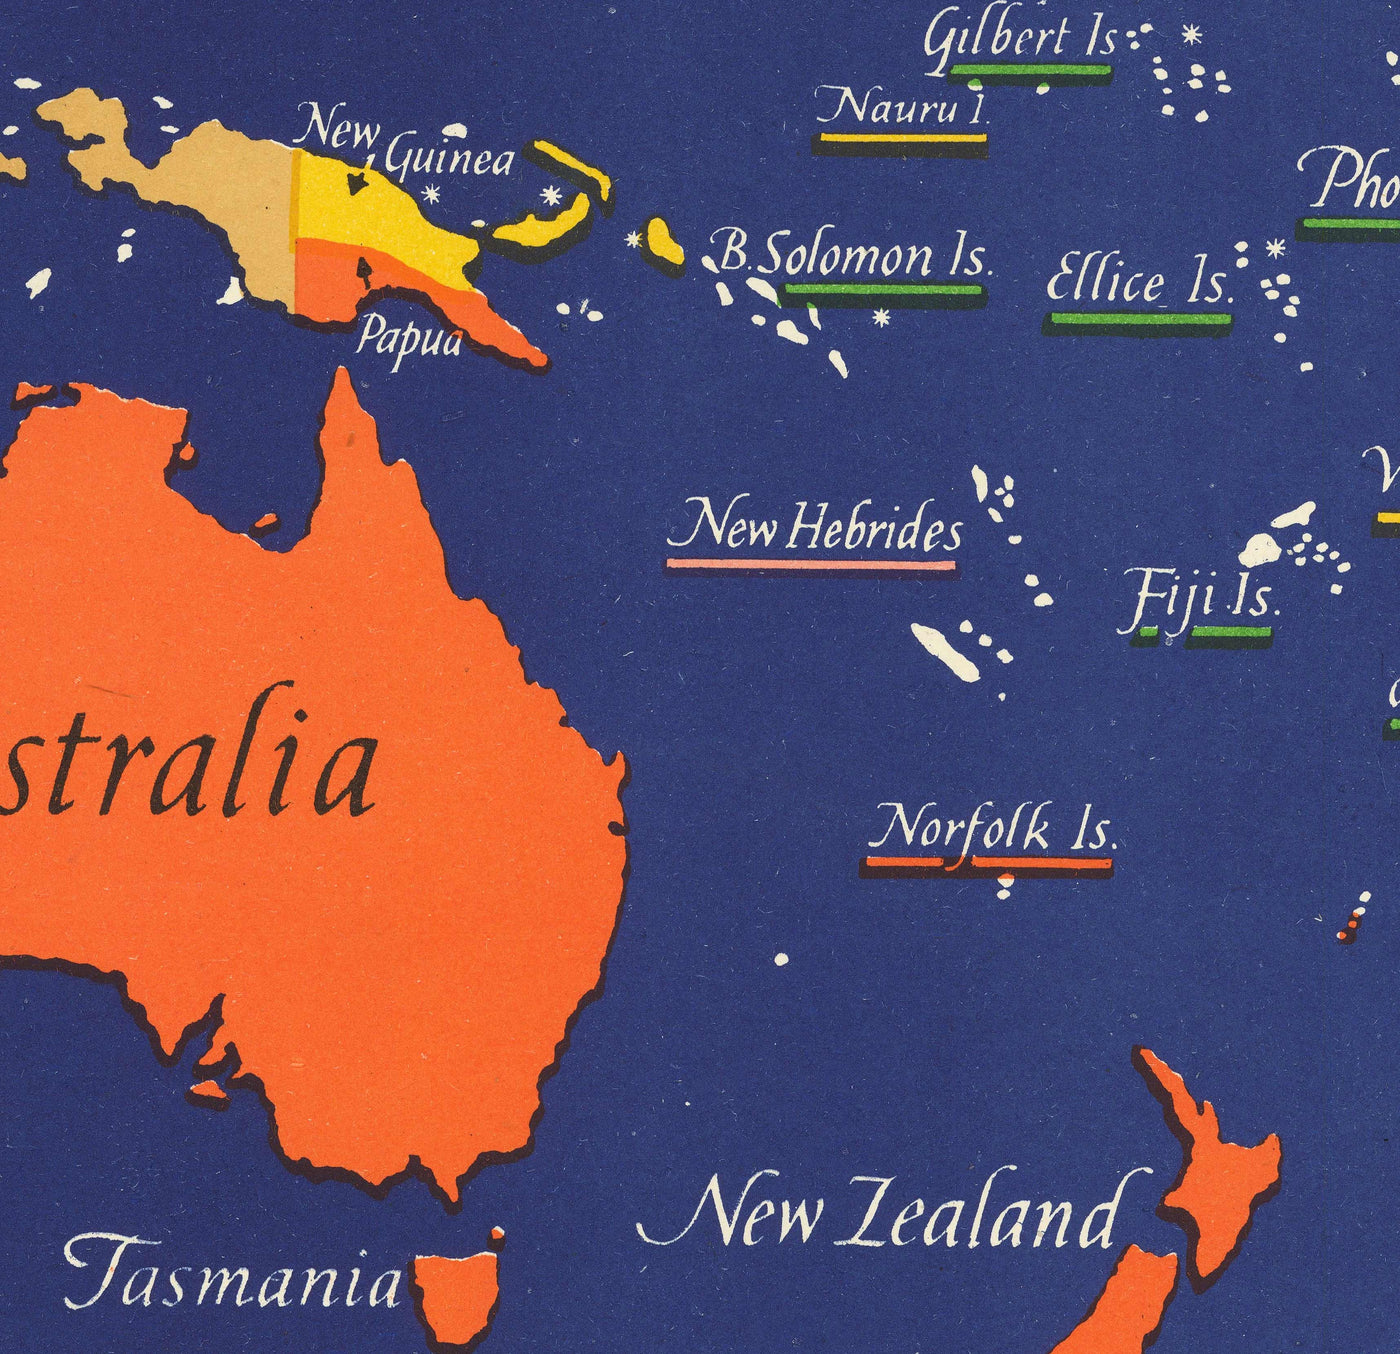 Alte britische Commonwealth der Nationen-Weltkarte, 1942 - Britisches Empire, Großbritannien, Kanada, Australien, Dominions, Indien, Afrika